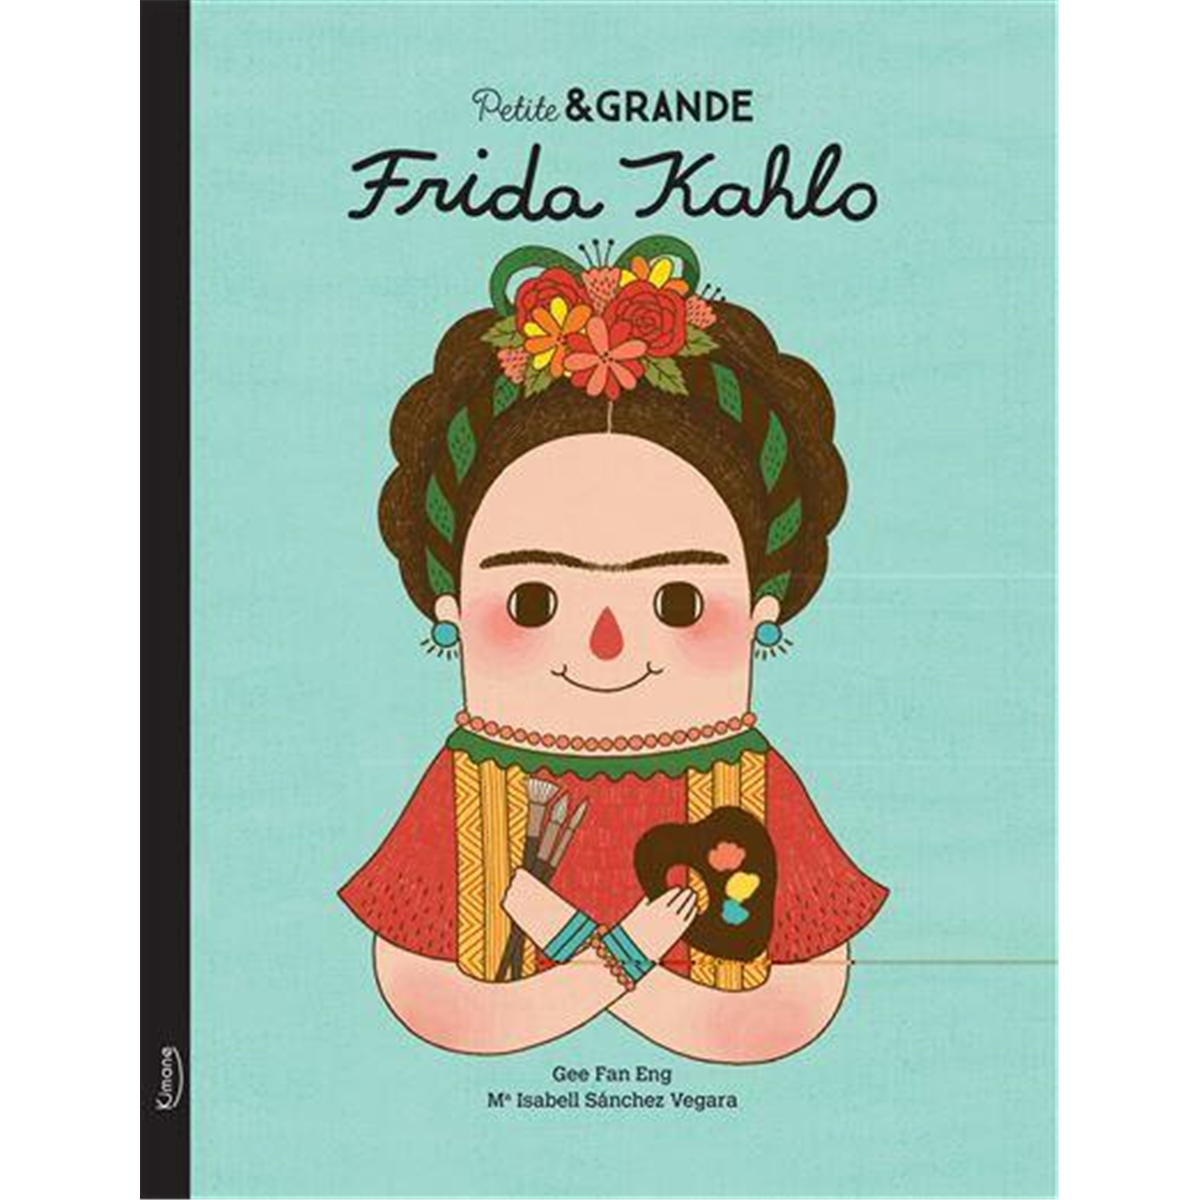 Petite & grande - frida kahlo